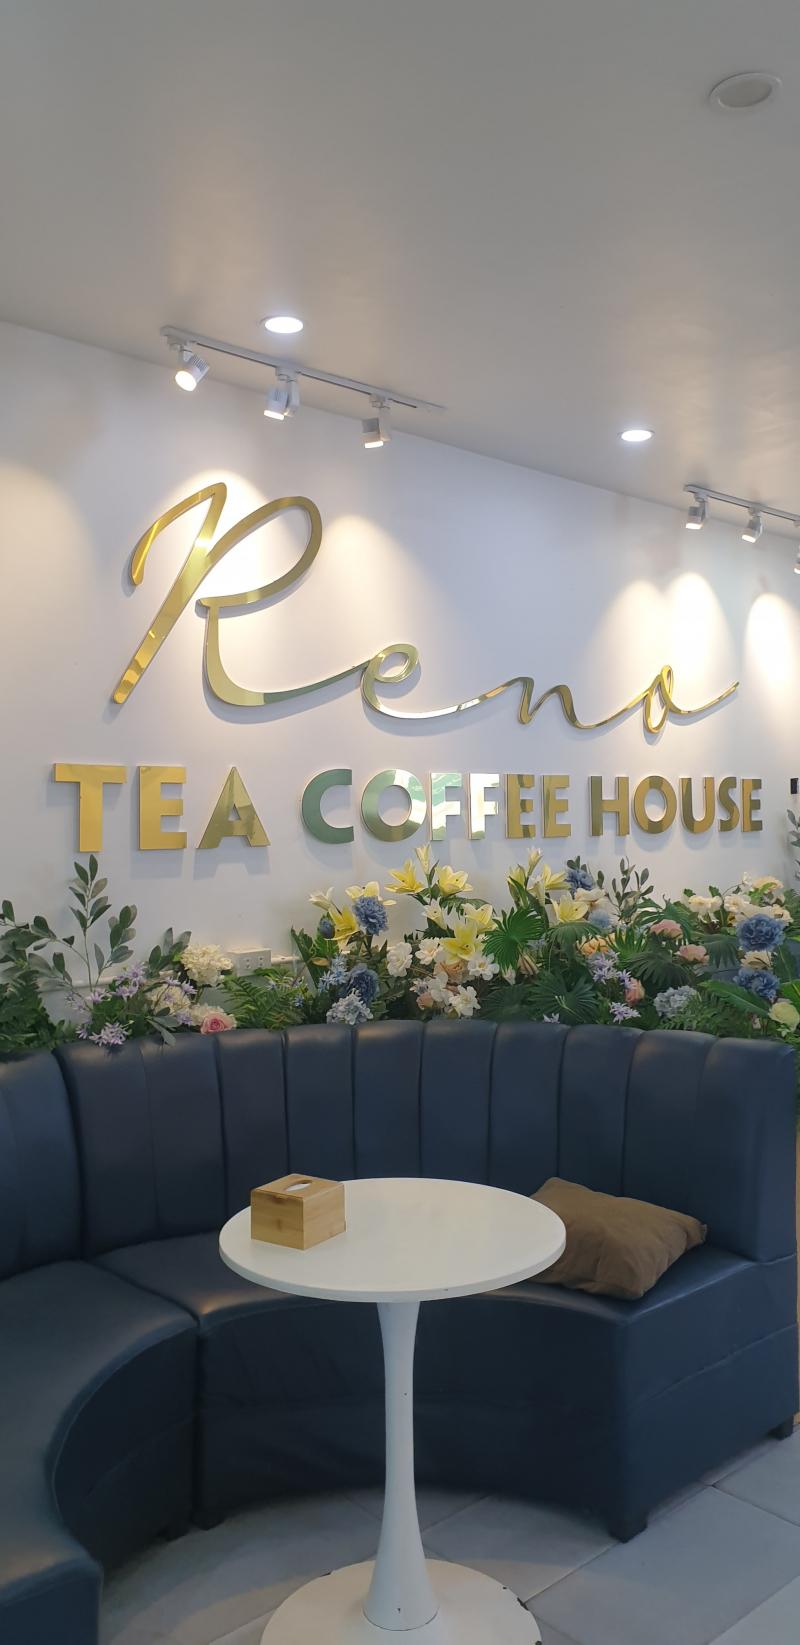 Reno Tea & Coffee House